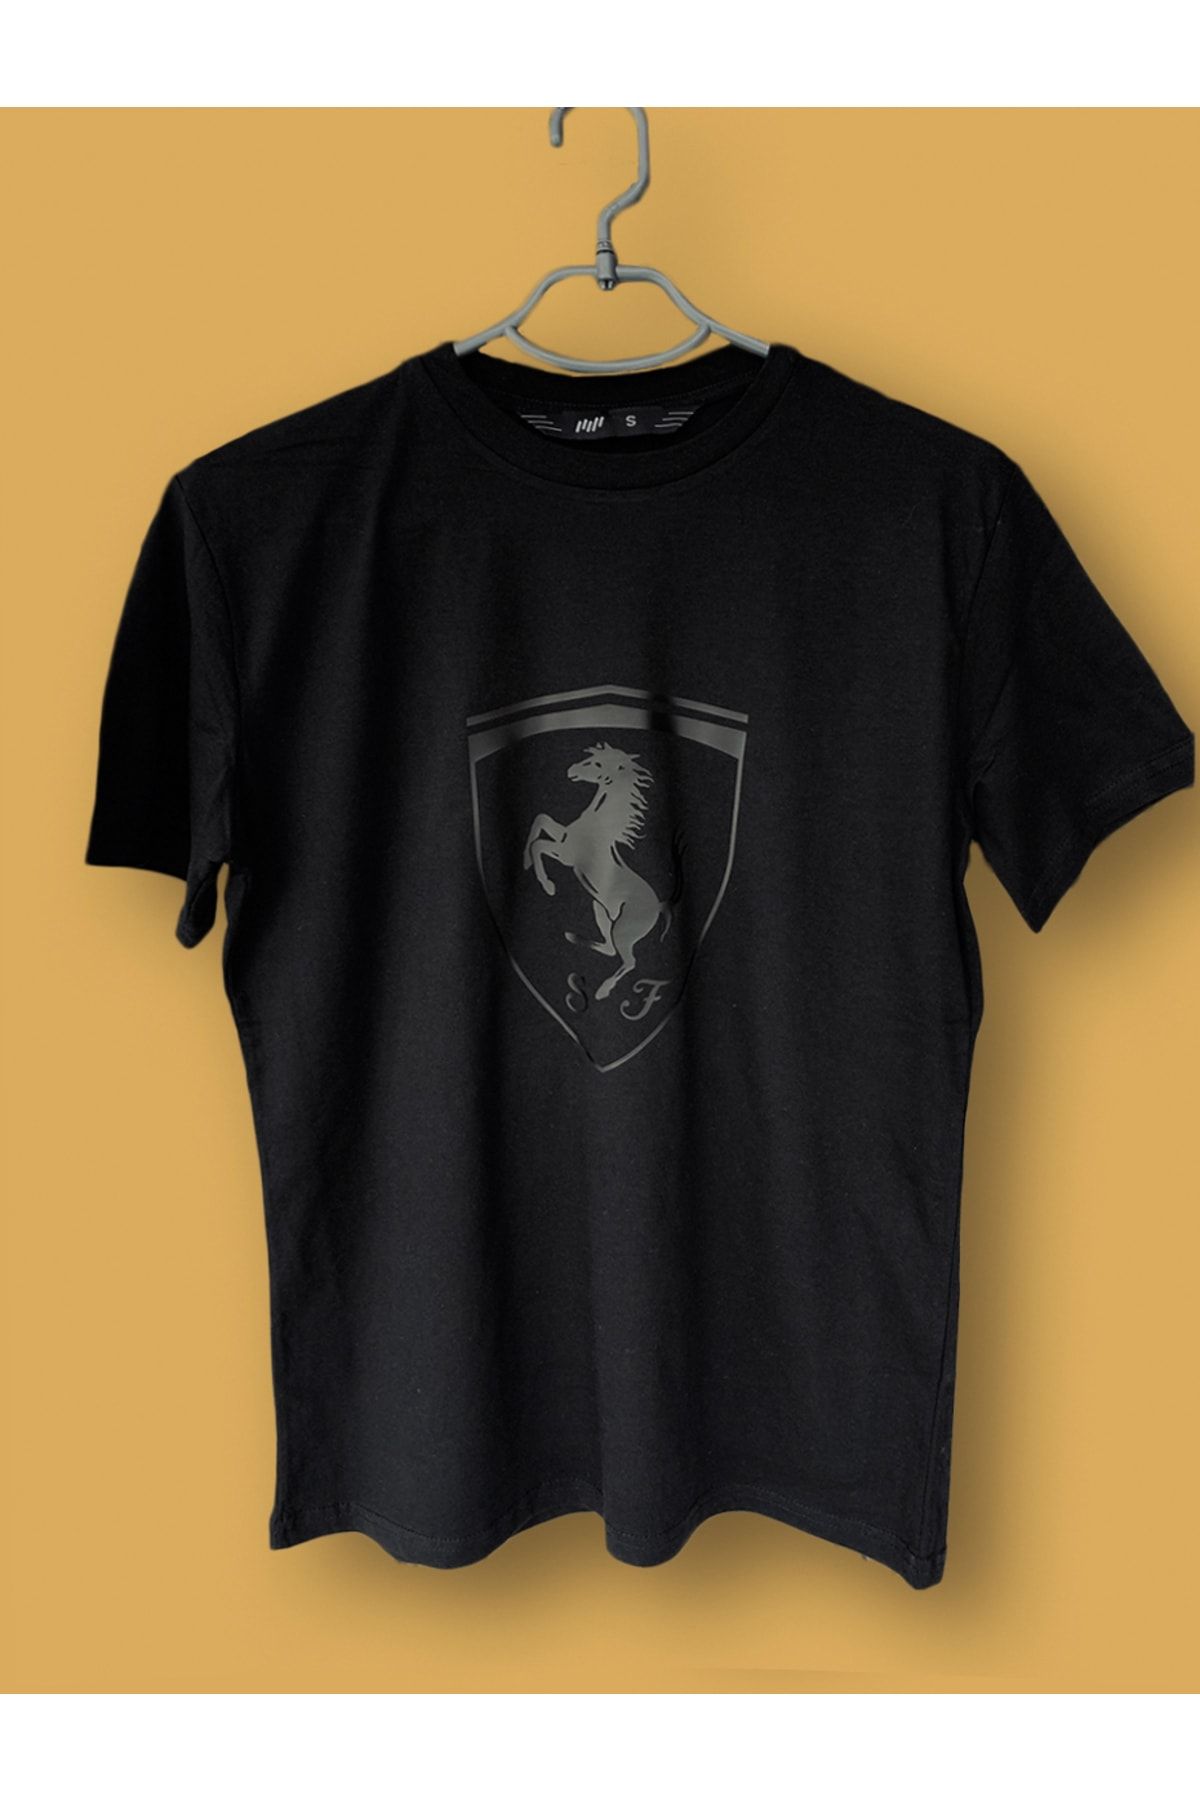 T-Shirt Ferrari Noir pour Homme Collection Officielle Ferrari